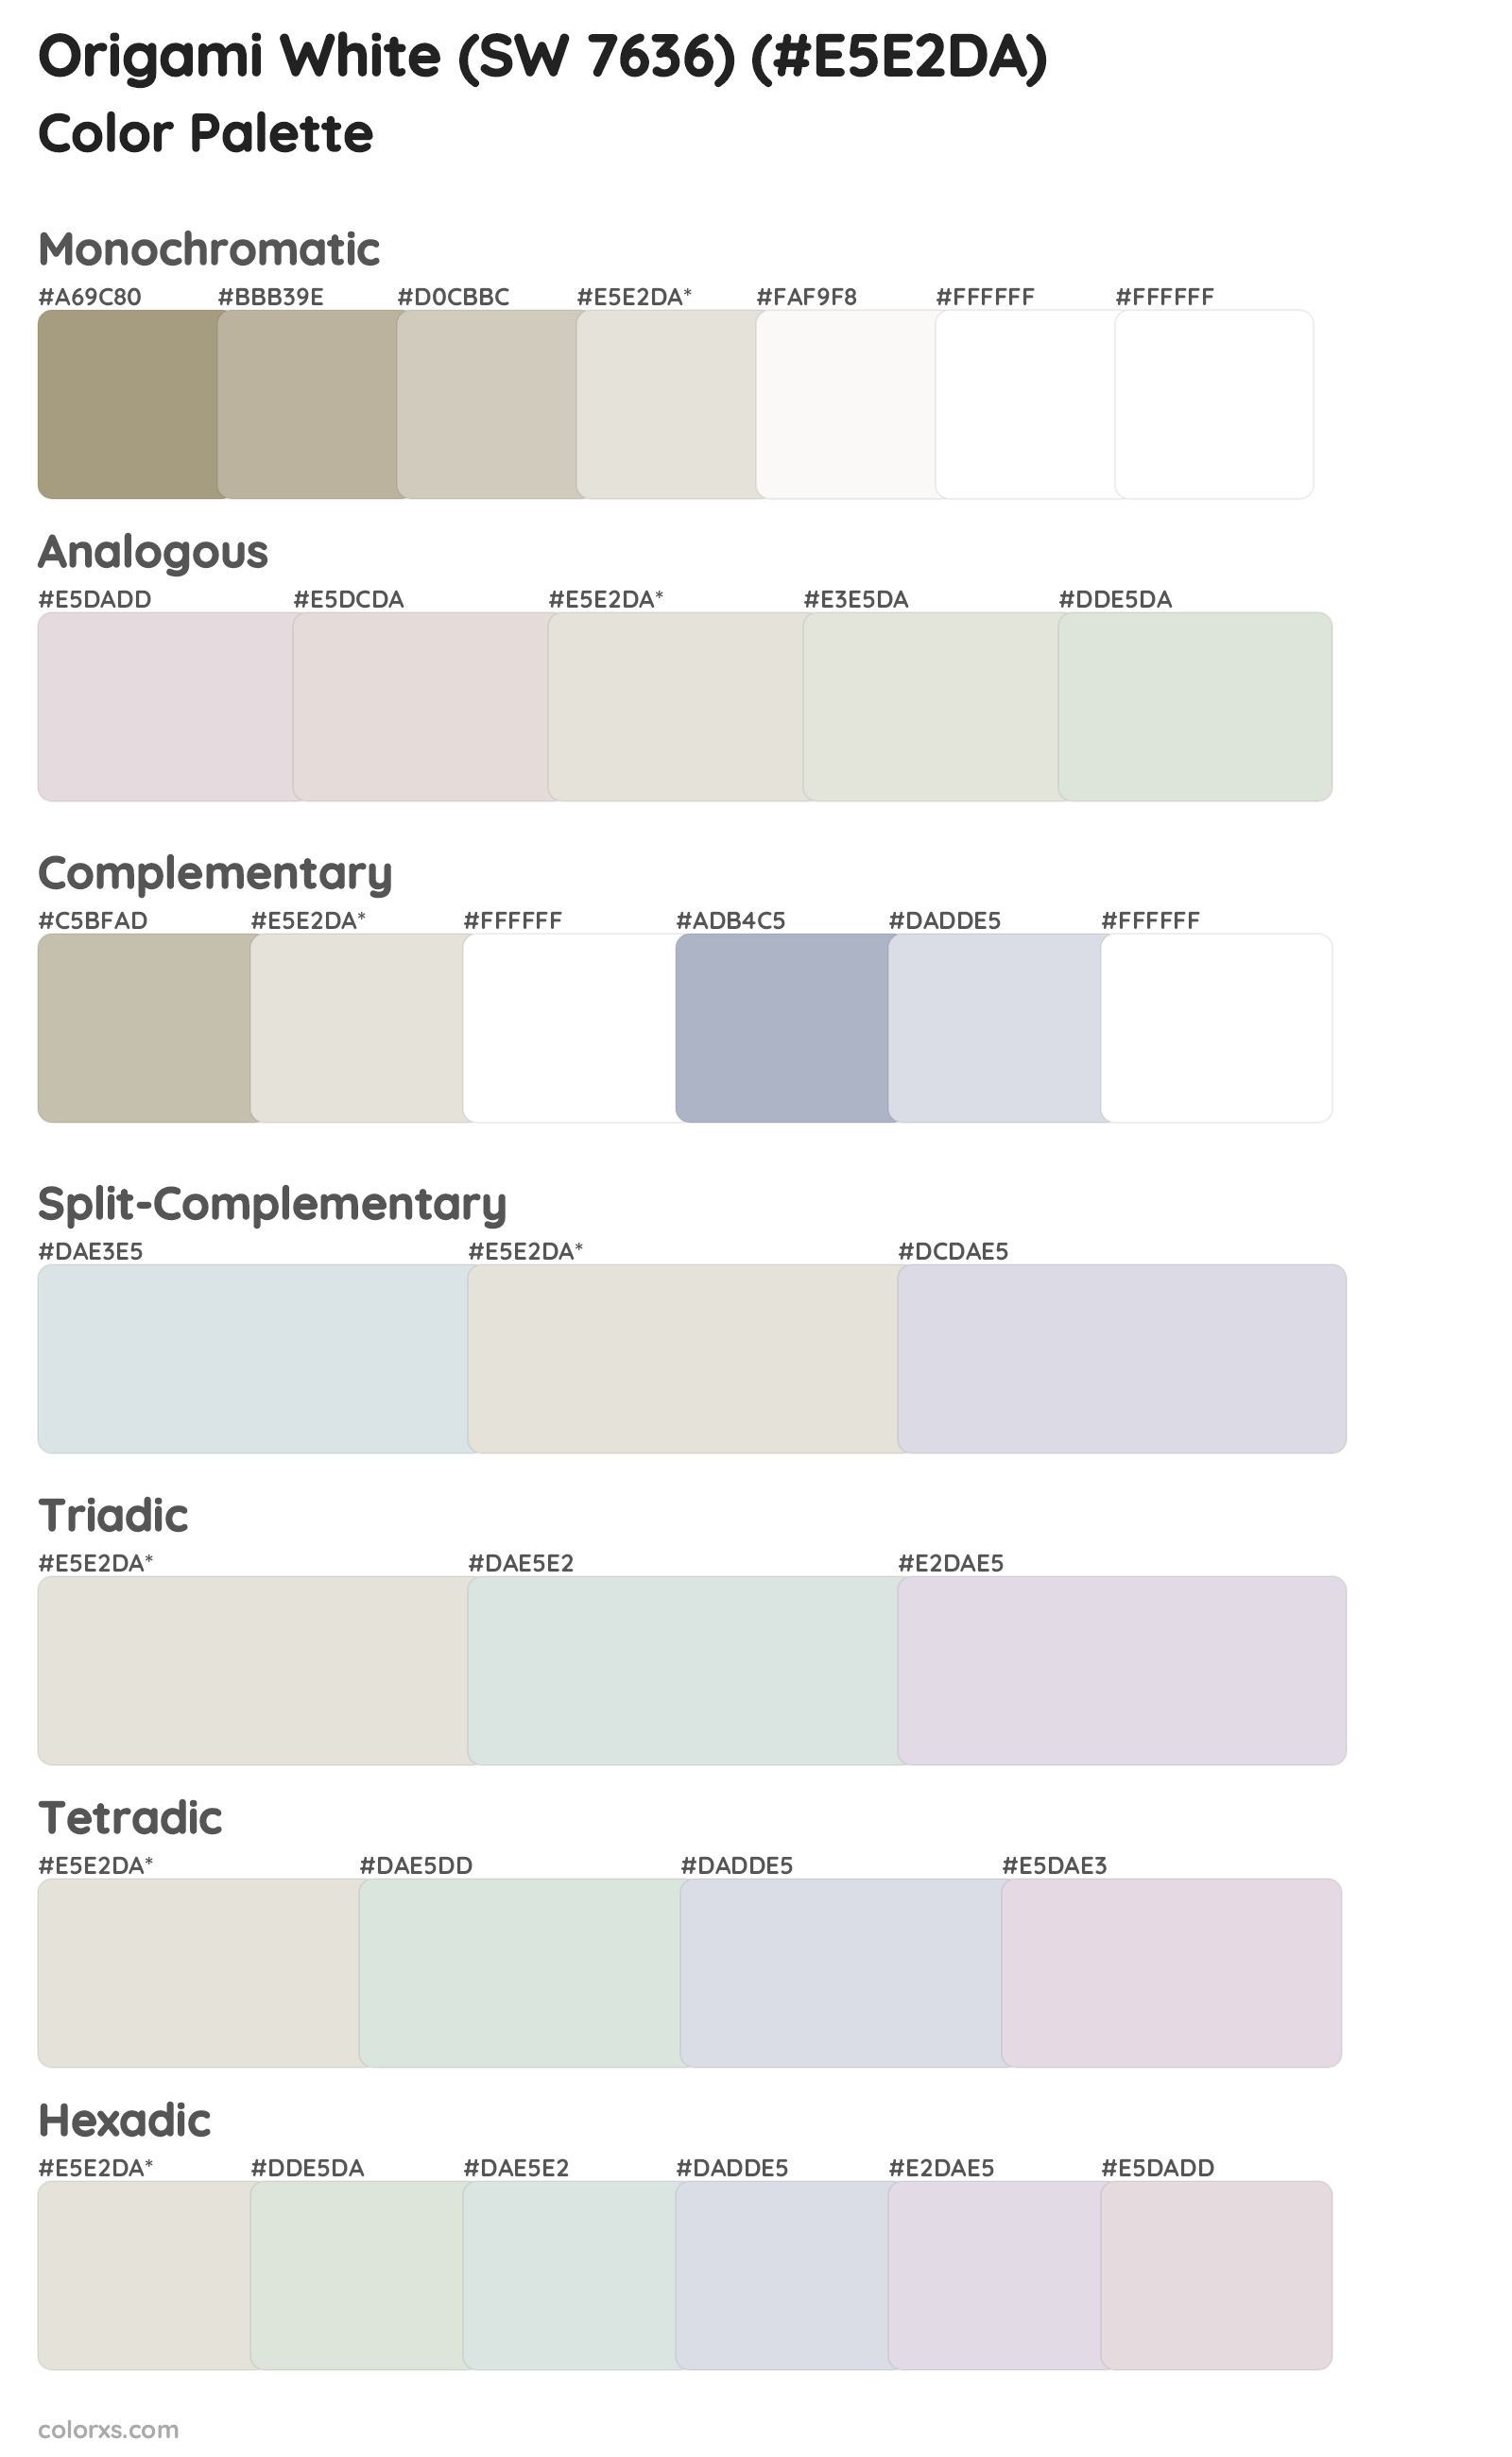 Origami White (SW 7636) Color Scheme Palettes